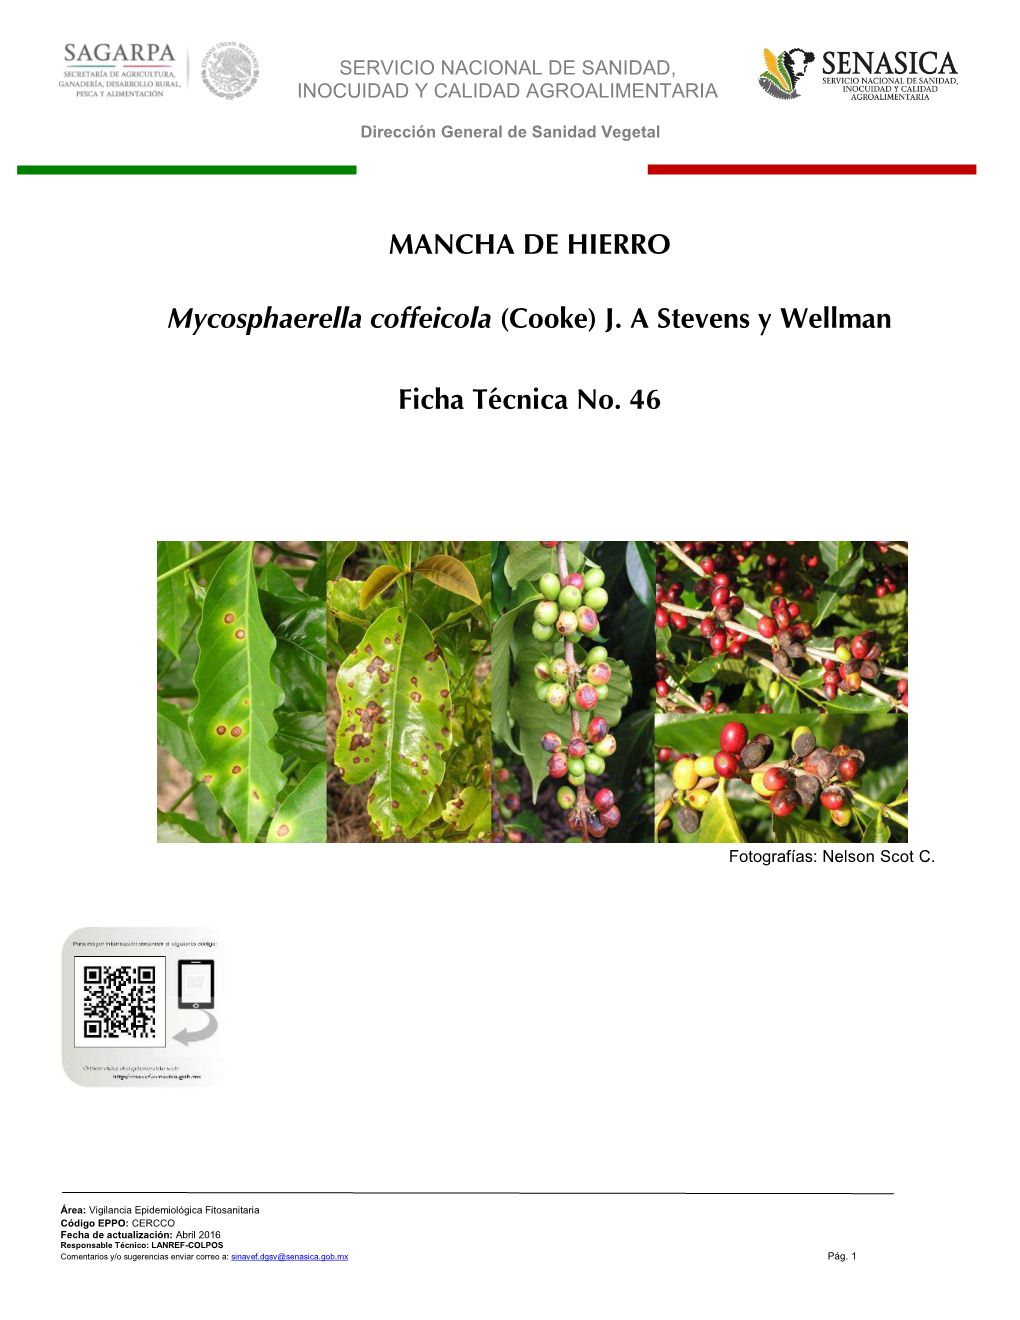 MANCHA DE HIERRO Mycosphaerella Coffeicola (Cooke) J. a Stevens Y Wellman Ficha Técnica No. 46